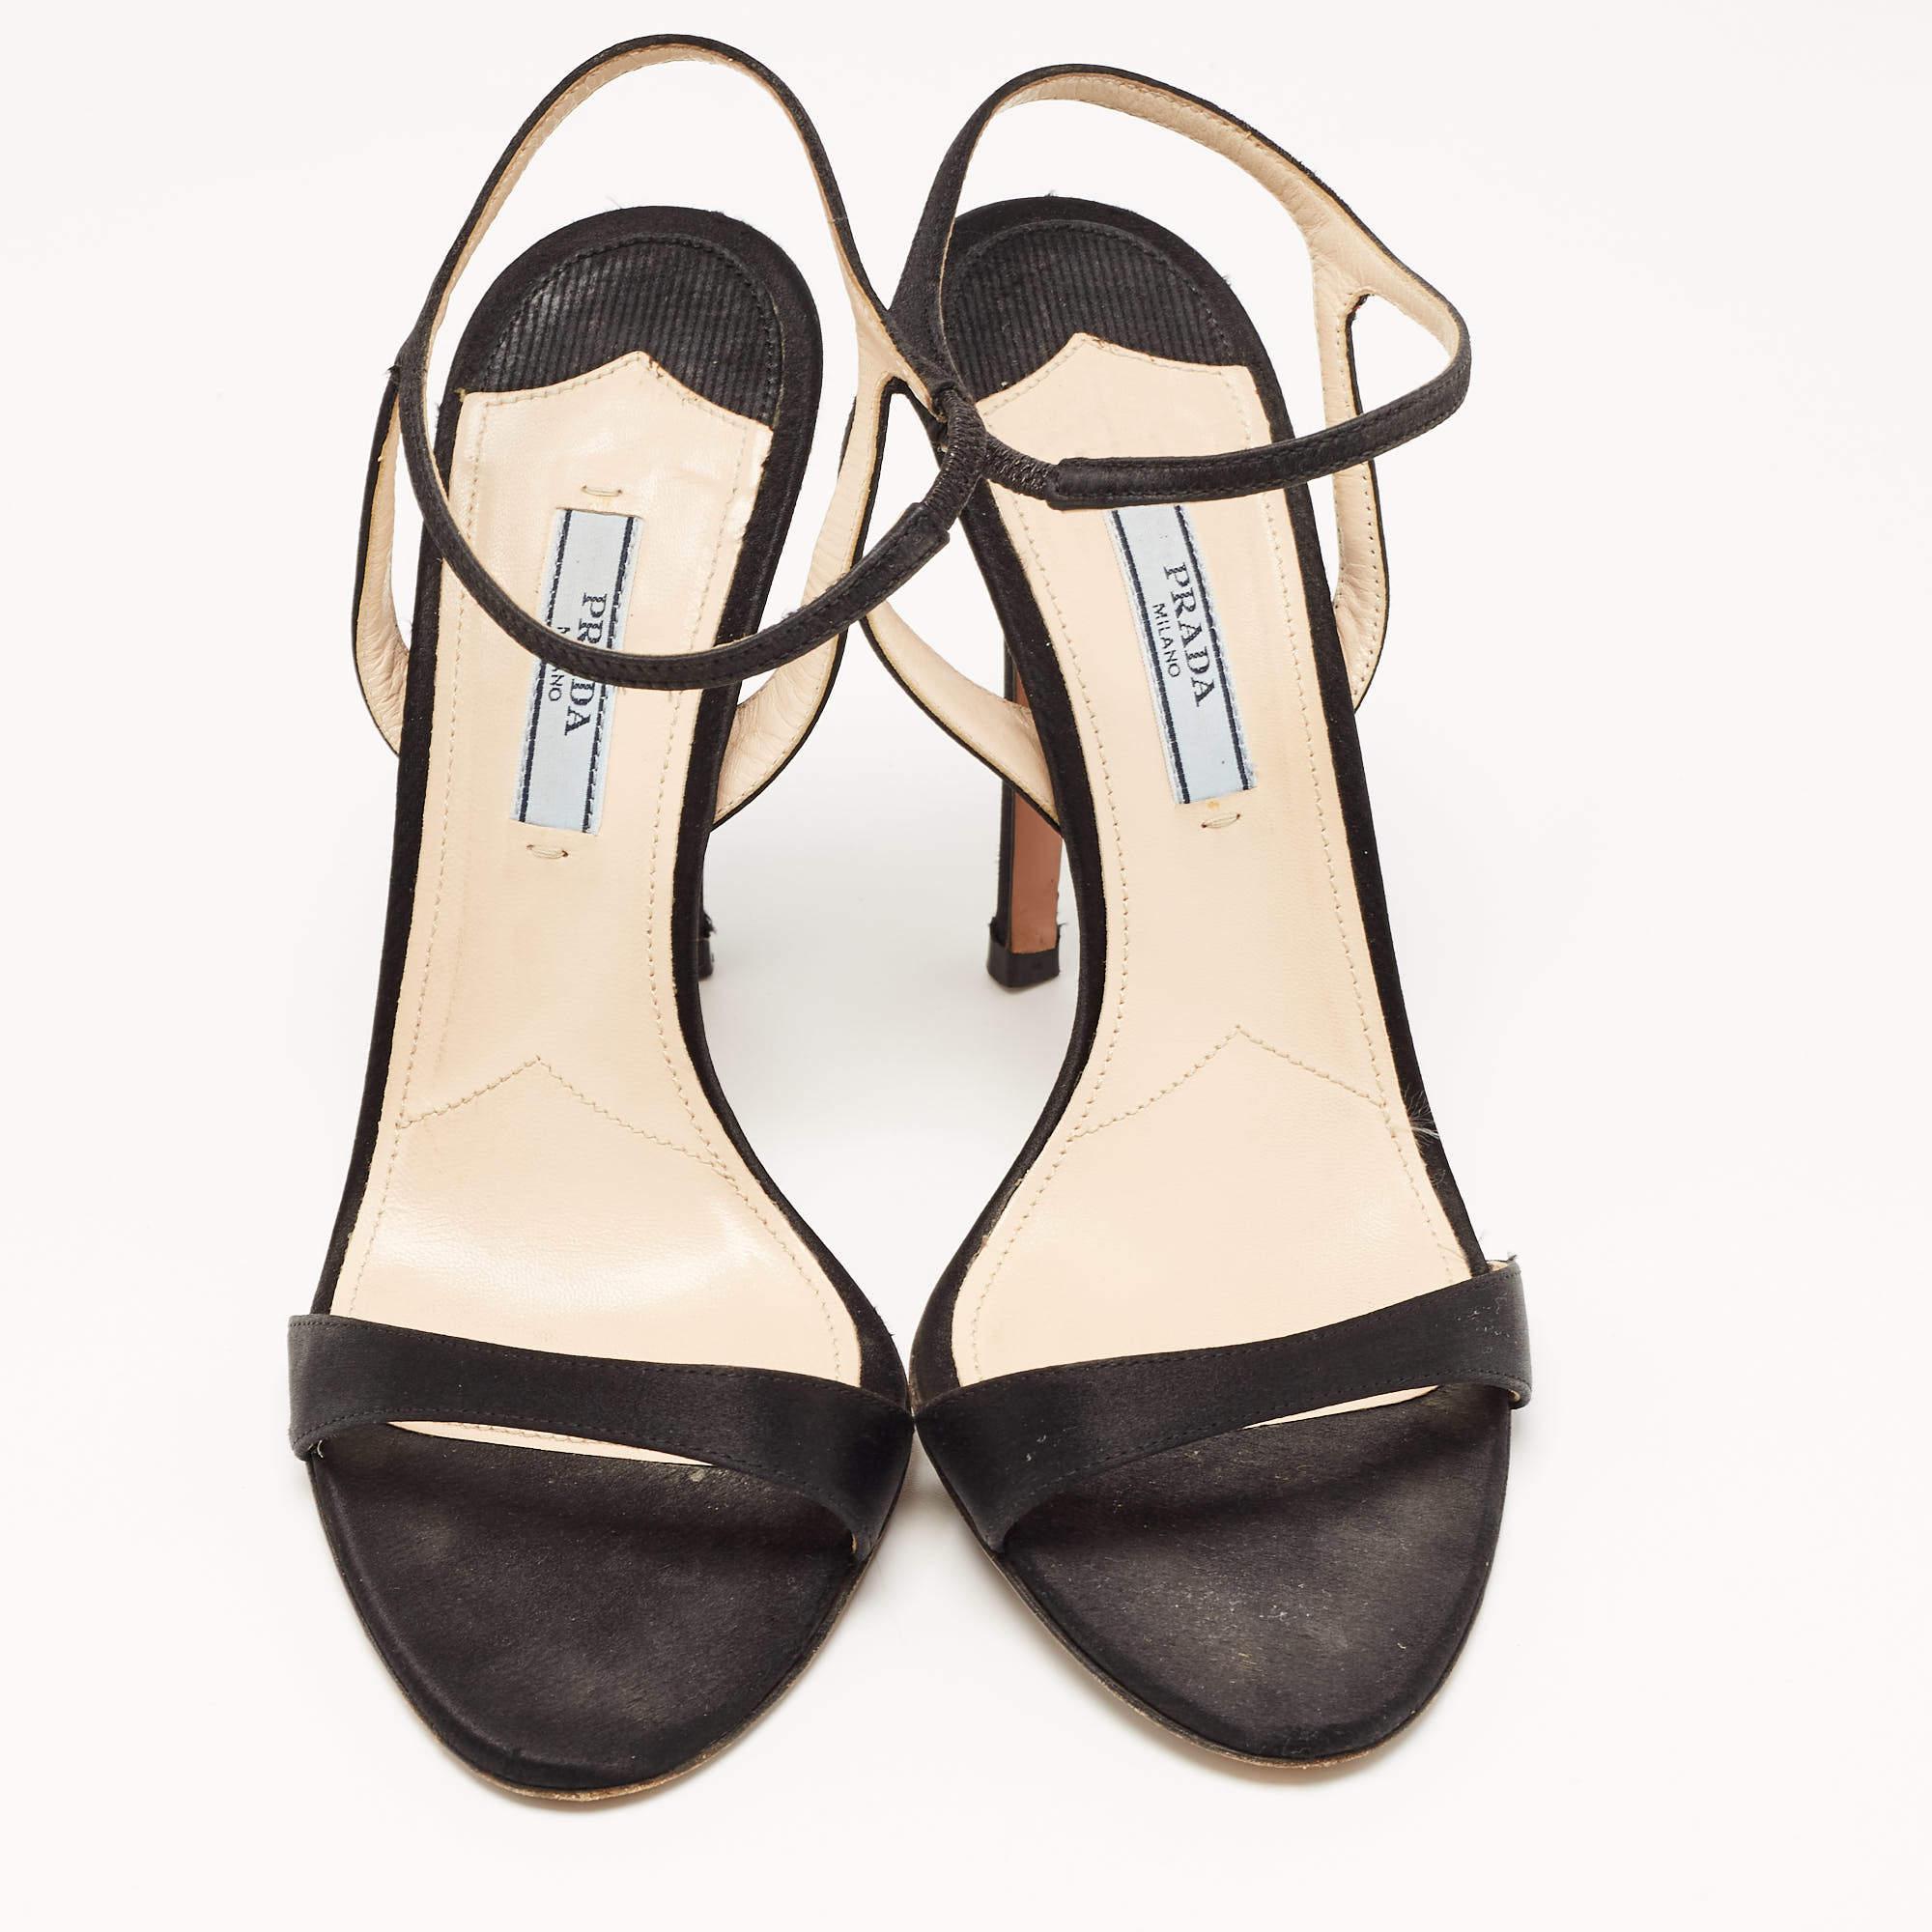 Prada Black Satin Ankle Strap Sandals Size 37.5 2